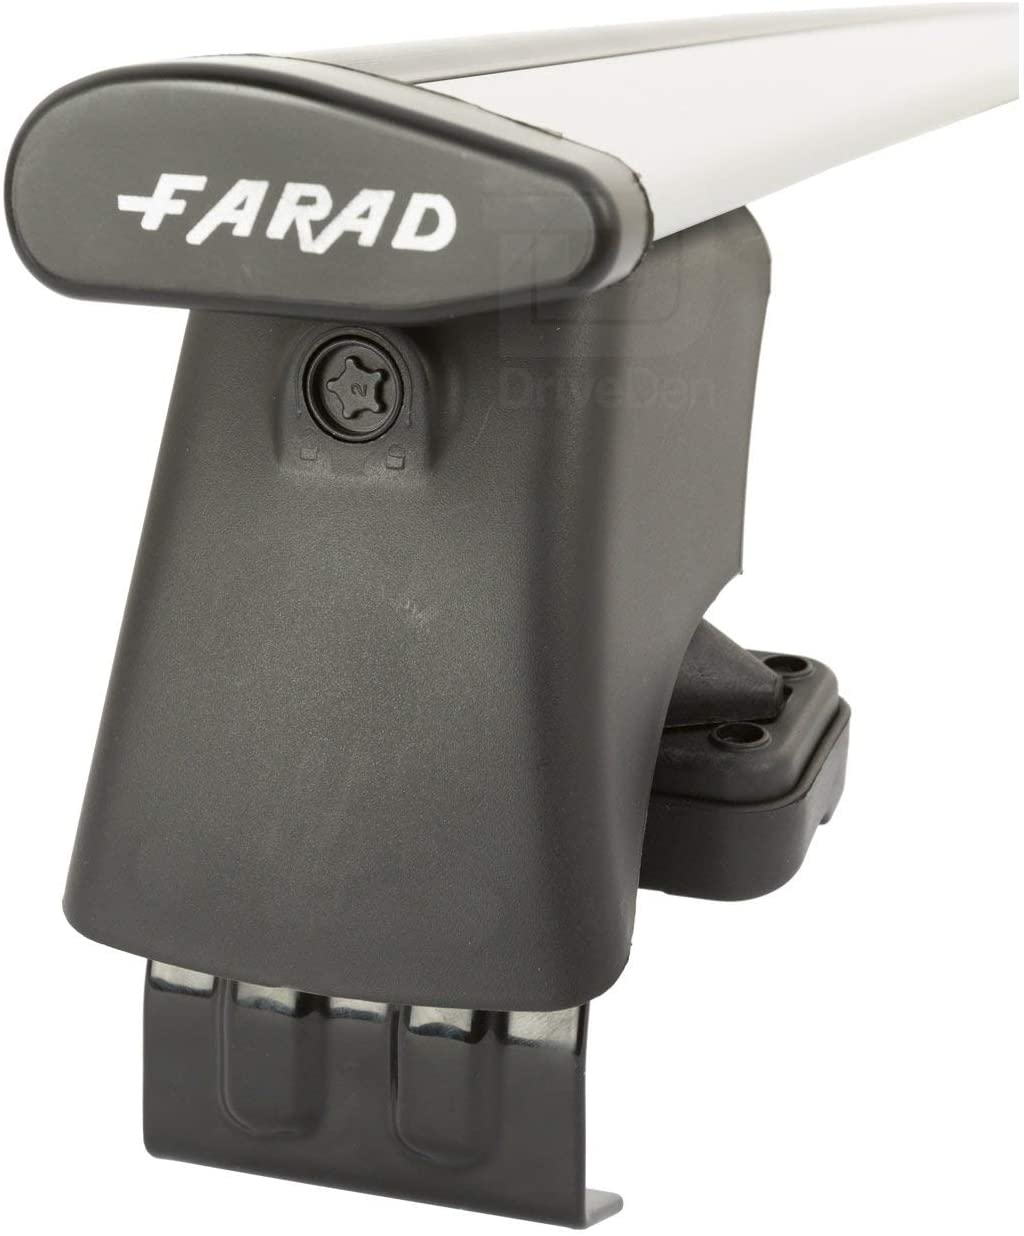 FARAD-Kit H2 per barre portatutto - Audi A3 1999-2003 (senza corrimano)